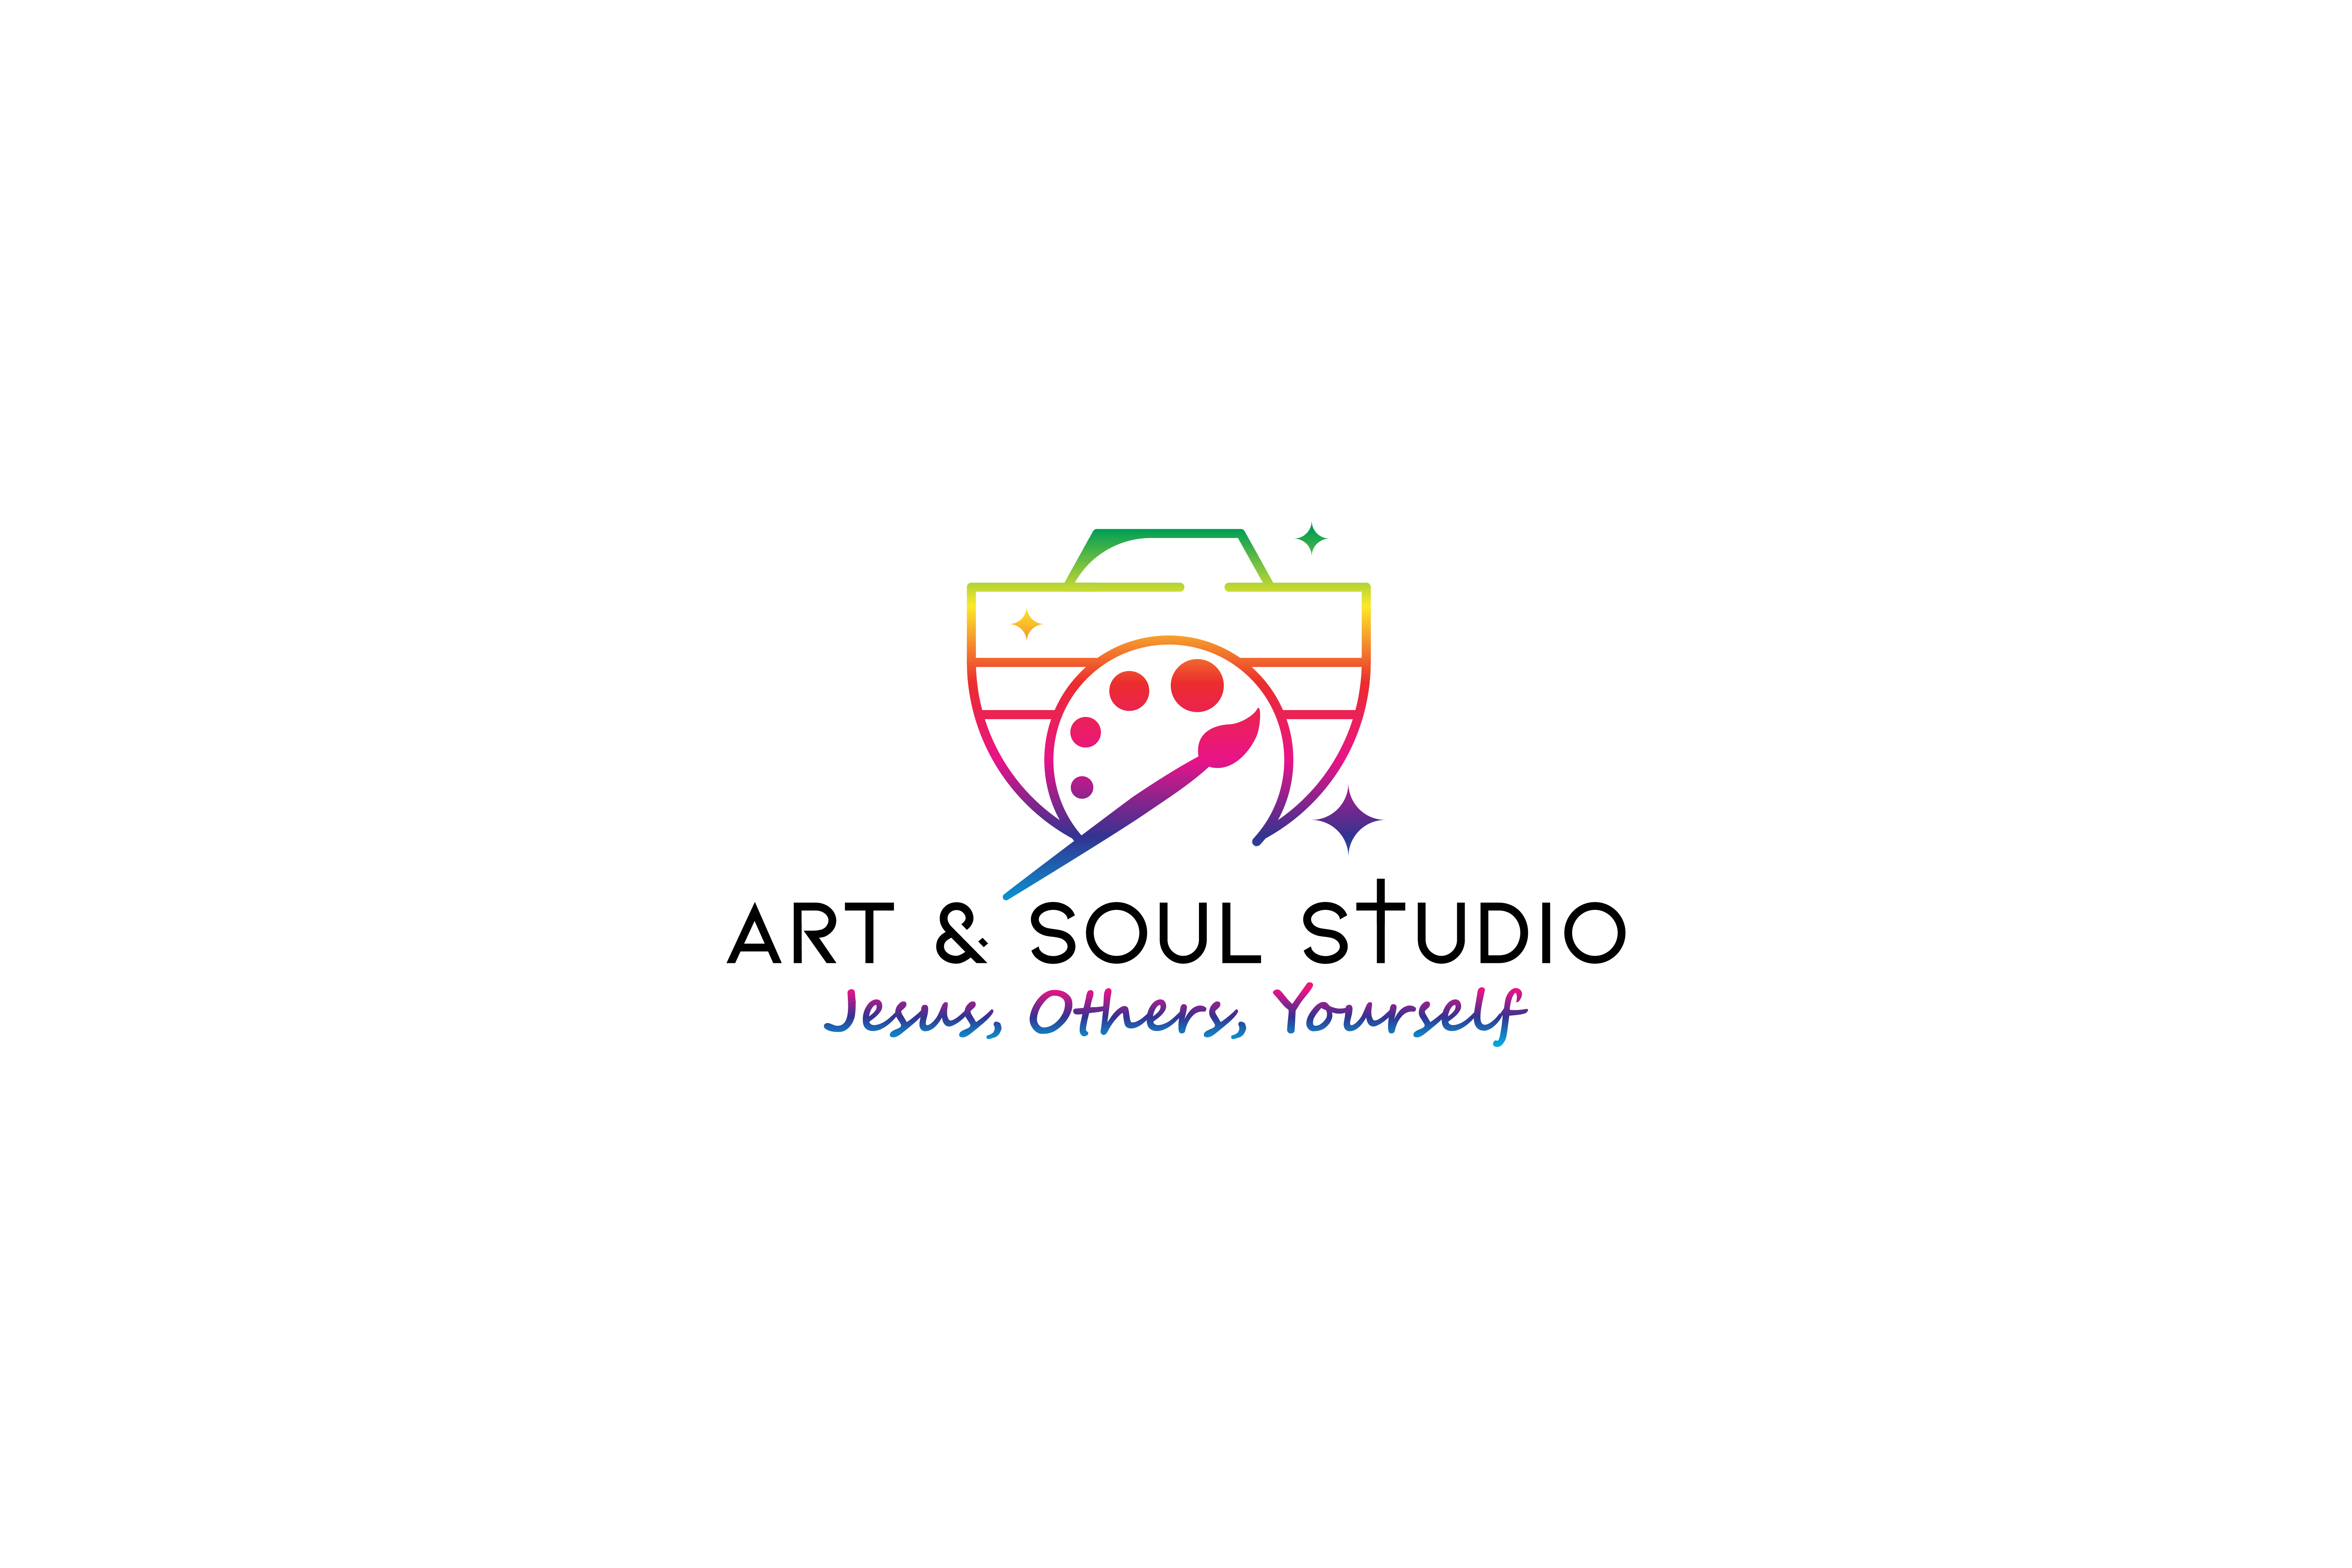 Art & Soul Sisters Studio, LLC